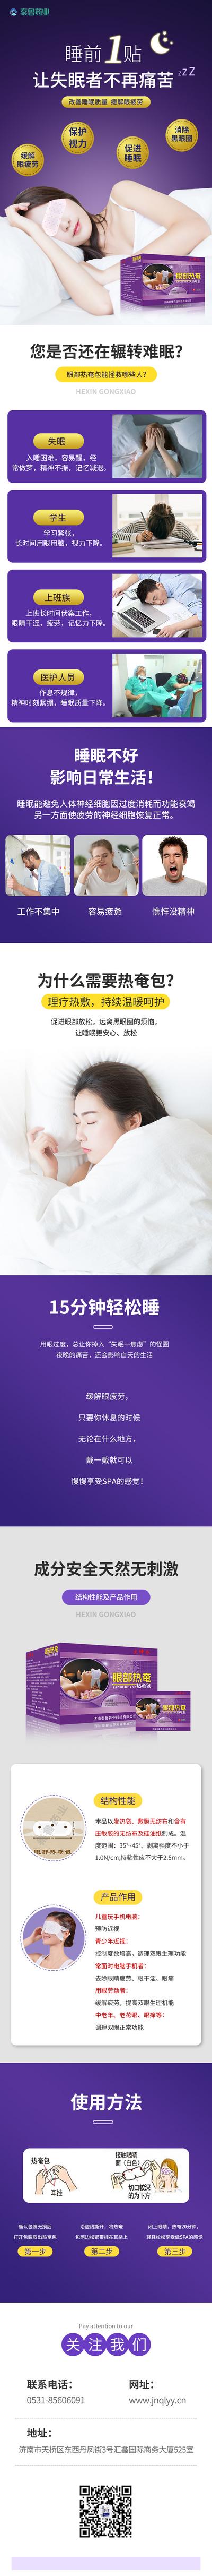 【南门网】广告 海报 背景板 眼贴 电商 长图 医药 药品 睡眠 助眠